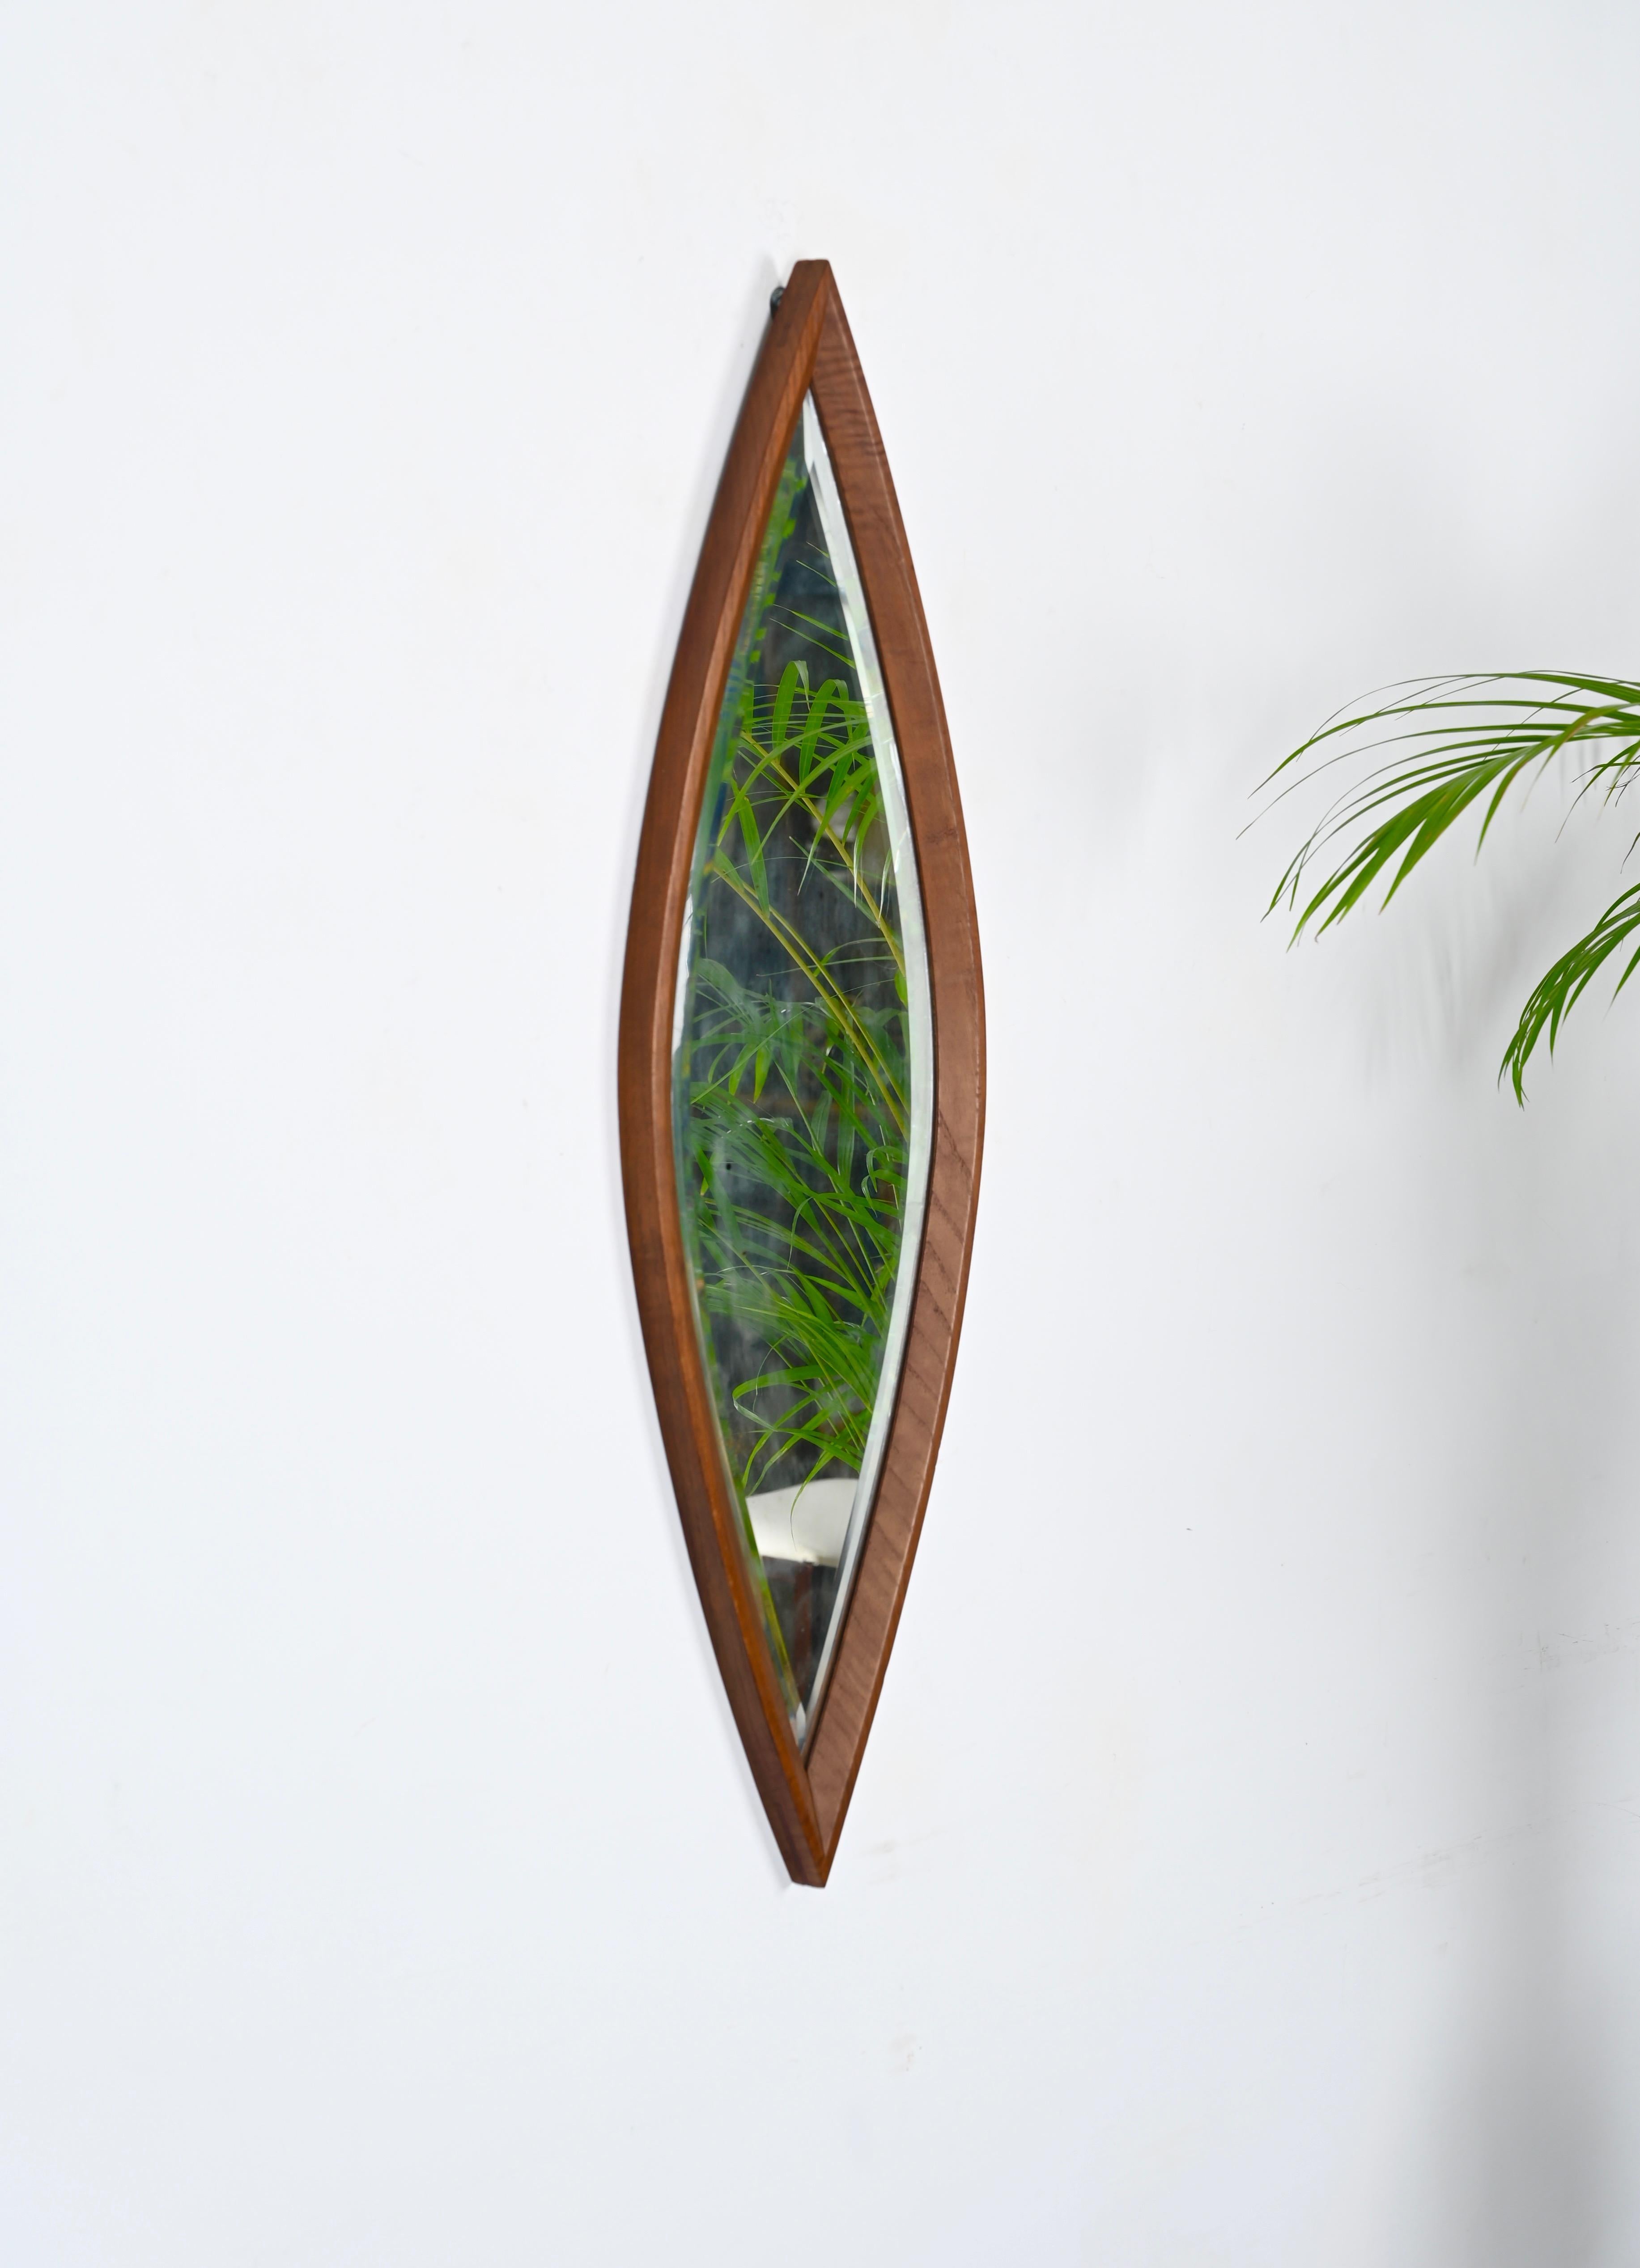 Magnifique miroir en forme d'œil conçu en Italie dans les années 1950.

Ce magnifique miroir présente un cadre en bois de noyer en forme d'œil et un superbe miroir biseauté à l'intérieur. Le miroir est doté d'une housse de protection en bois au